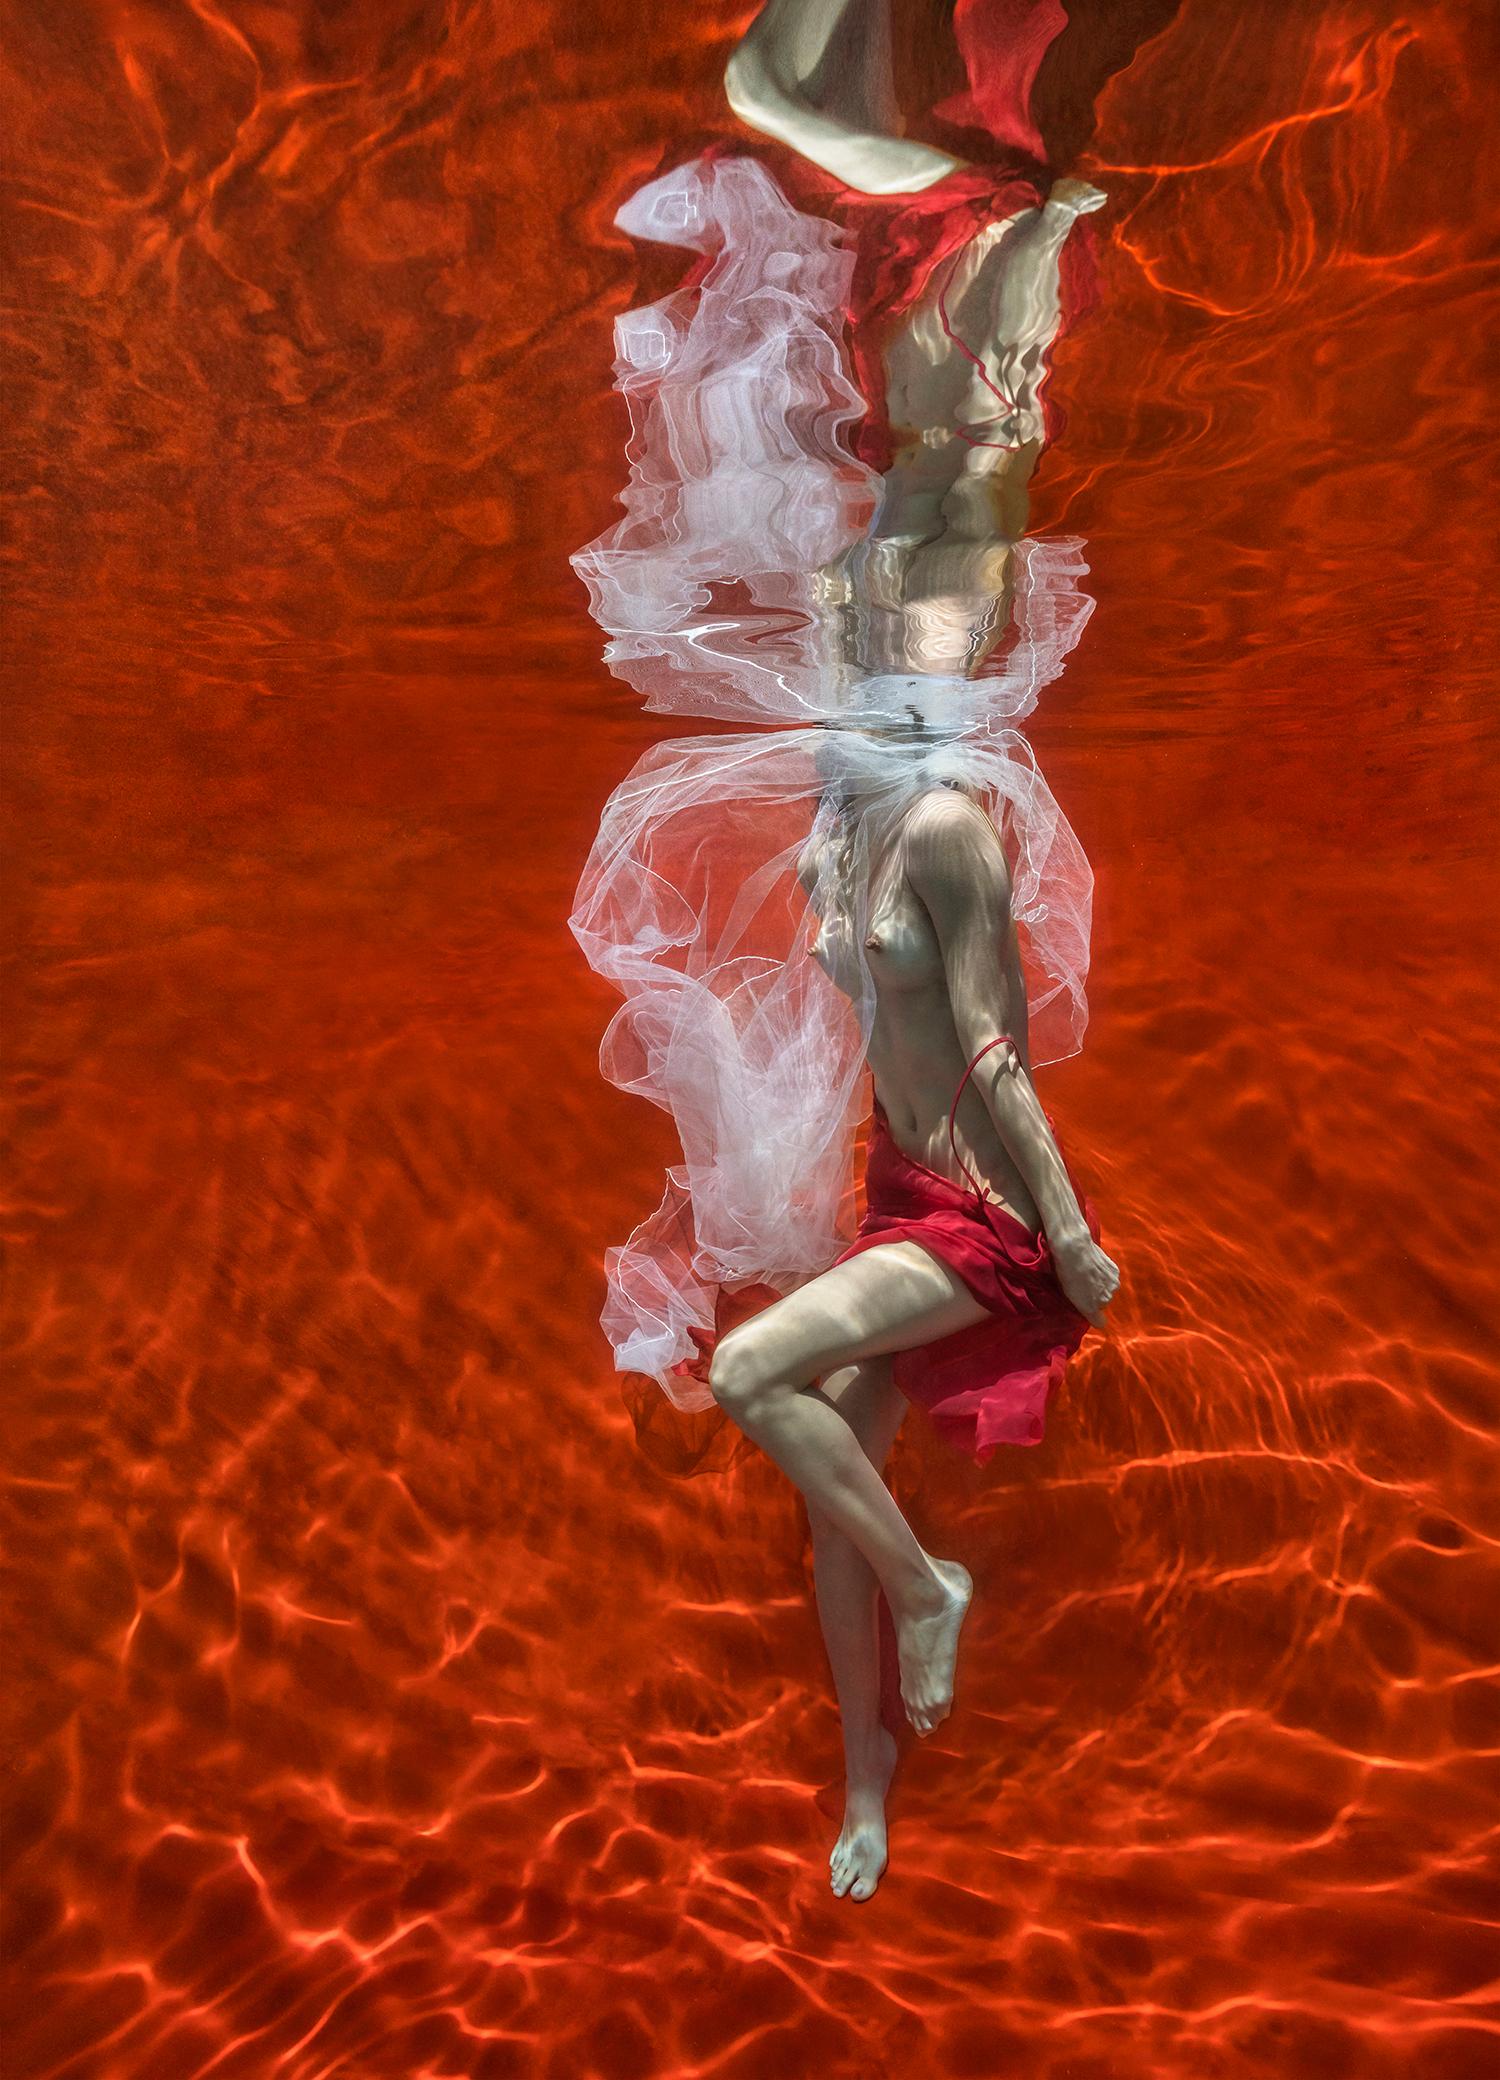 Color Photograph Alex Sher - Blood and Milk III - photographie de nu sous l'eau - impression sur papier 48 x 35